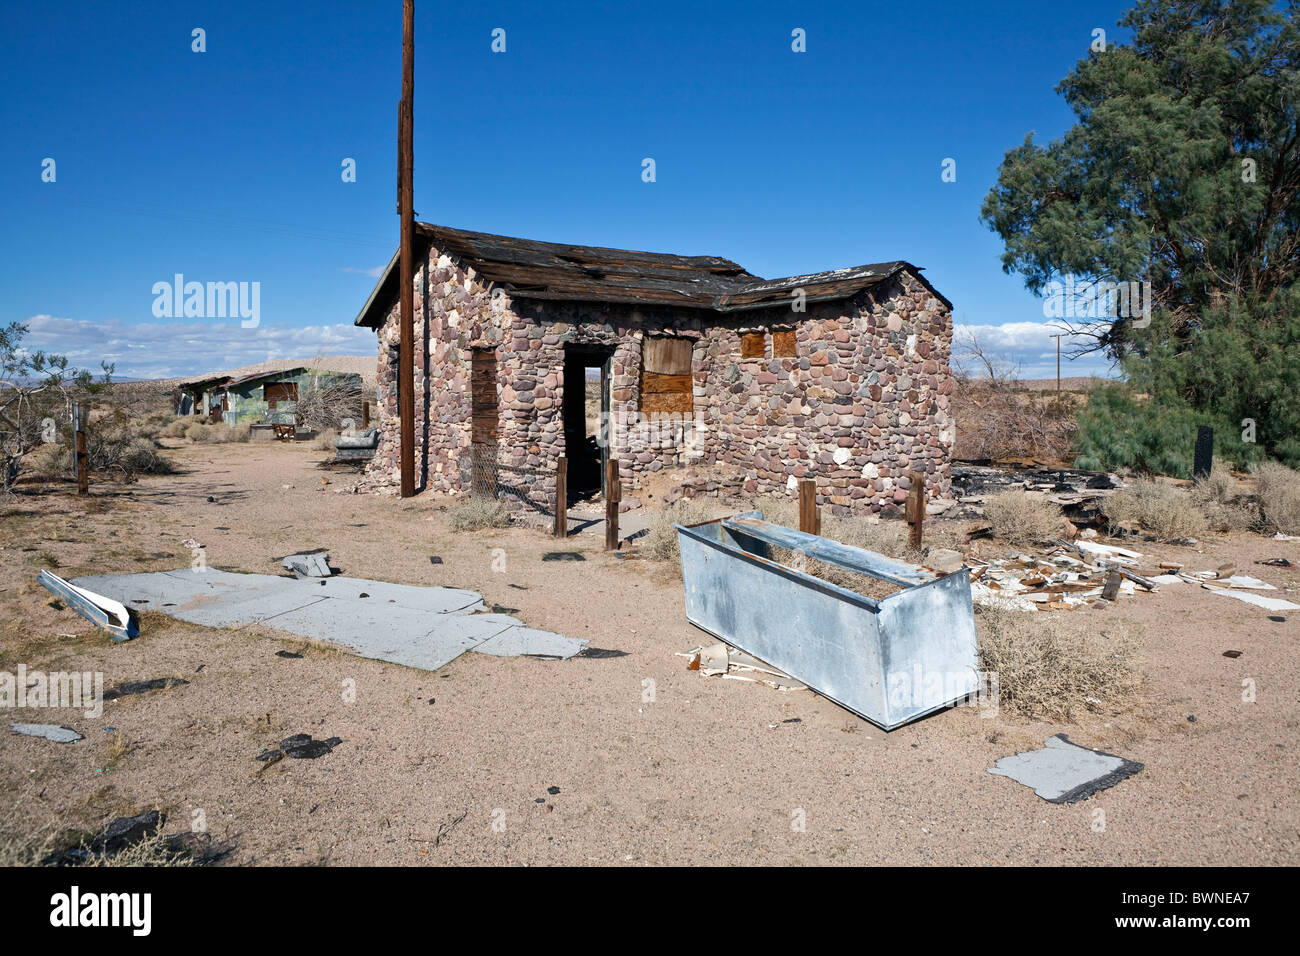 Désert de Mojave ruine près de l'historique Route 66 en Californie du sud. Banque D'Images